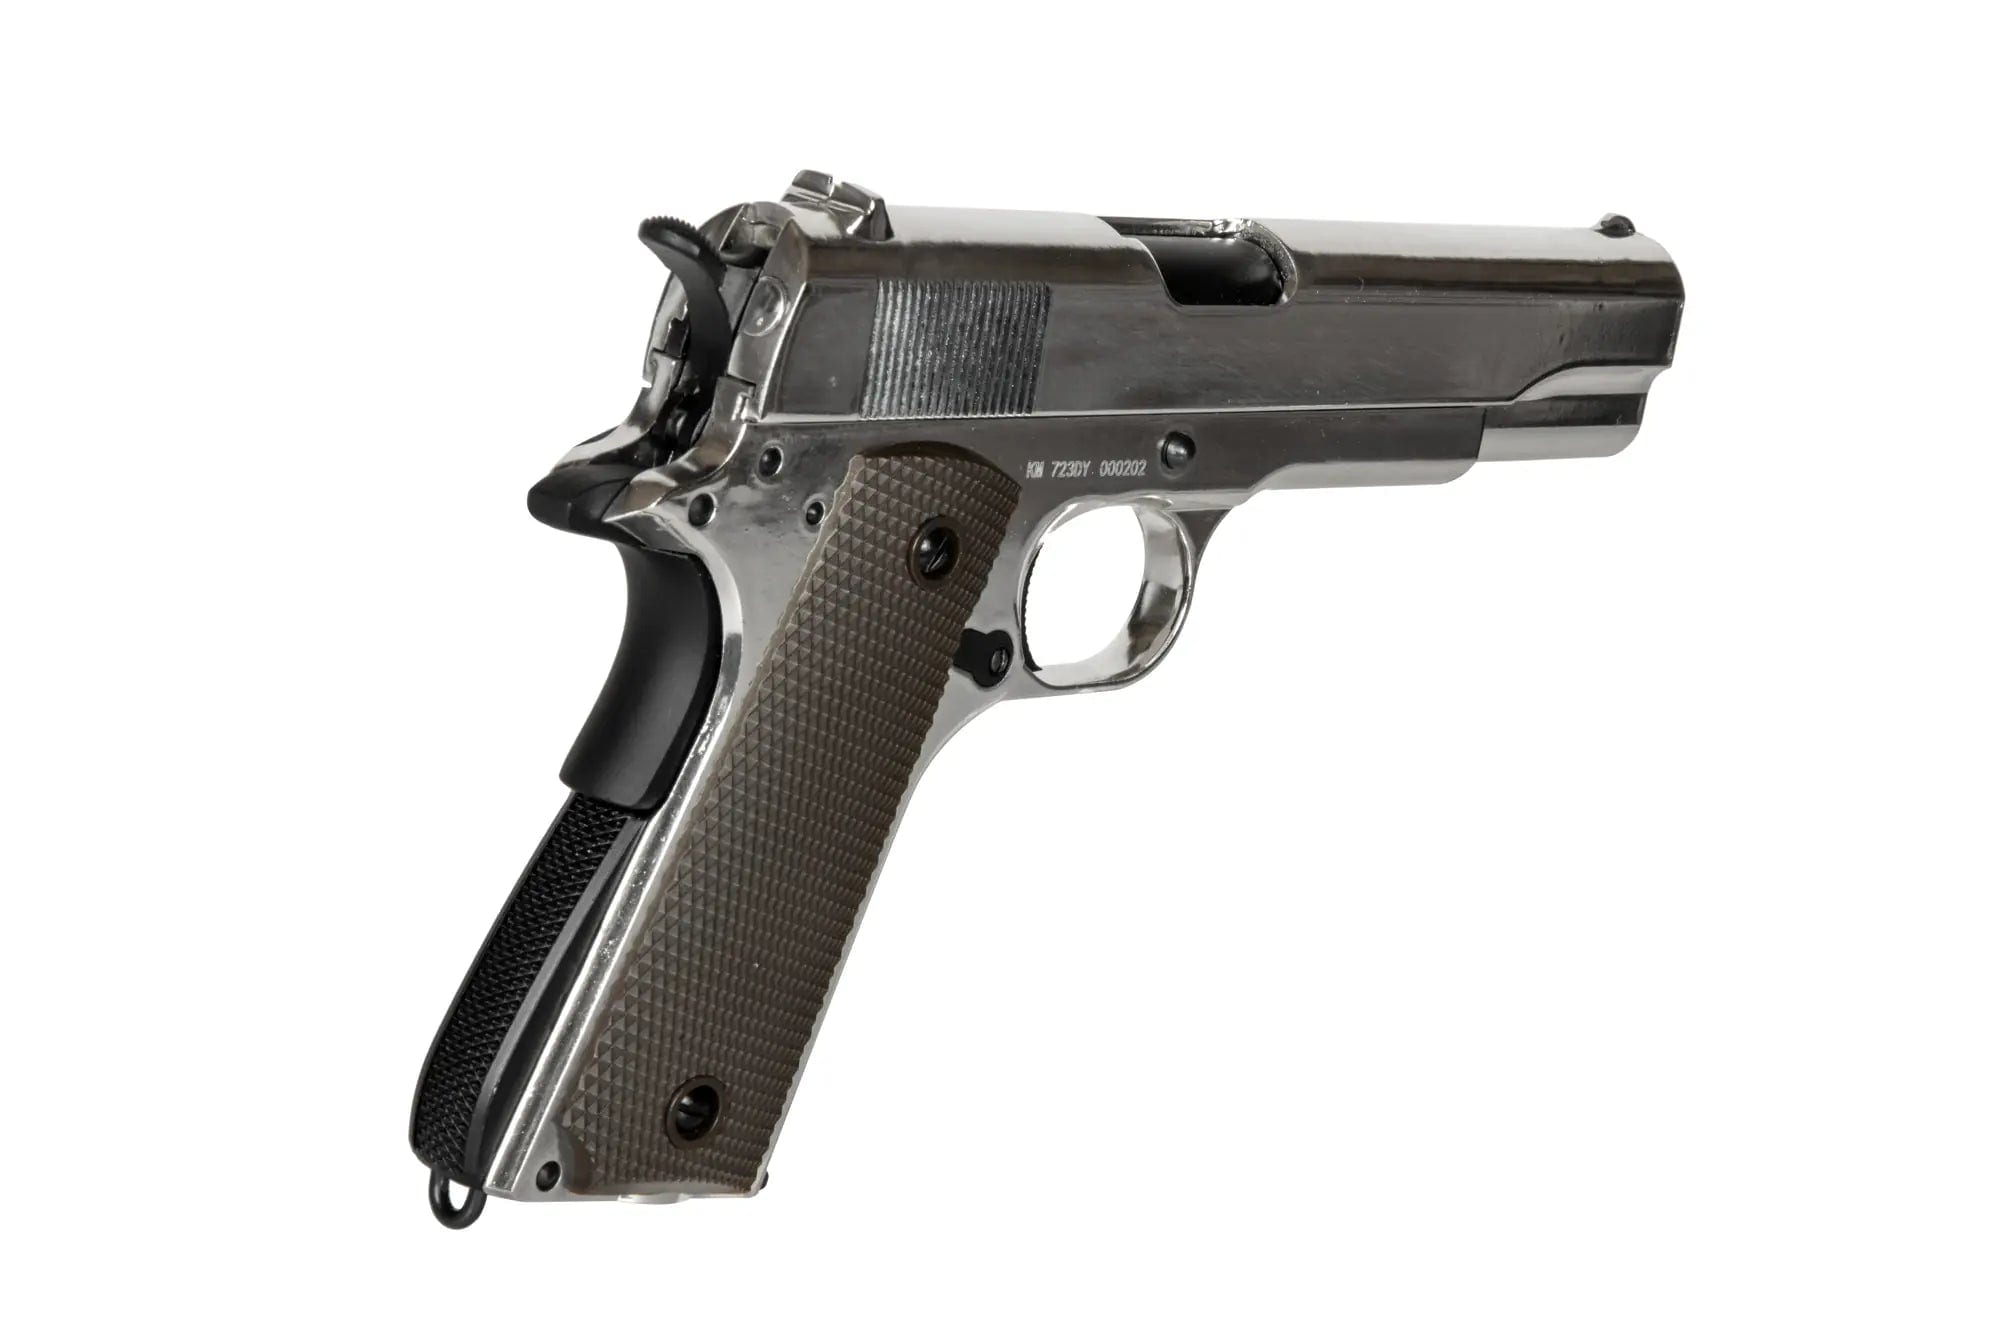 Réplique de pistolet M1911 (723DY) - Argent